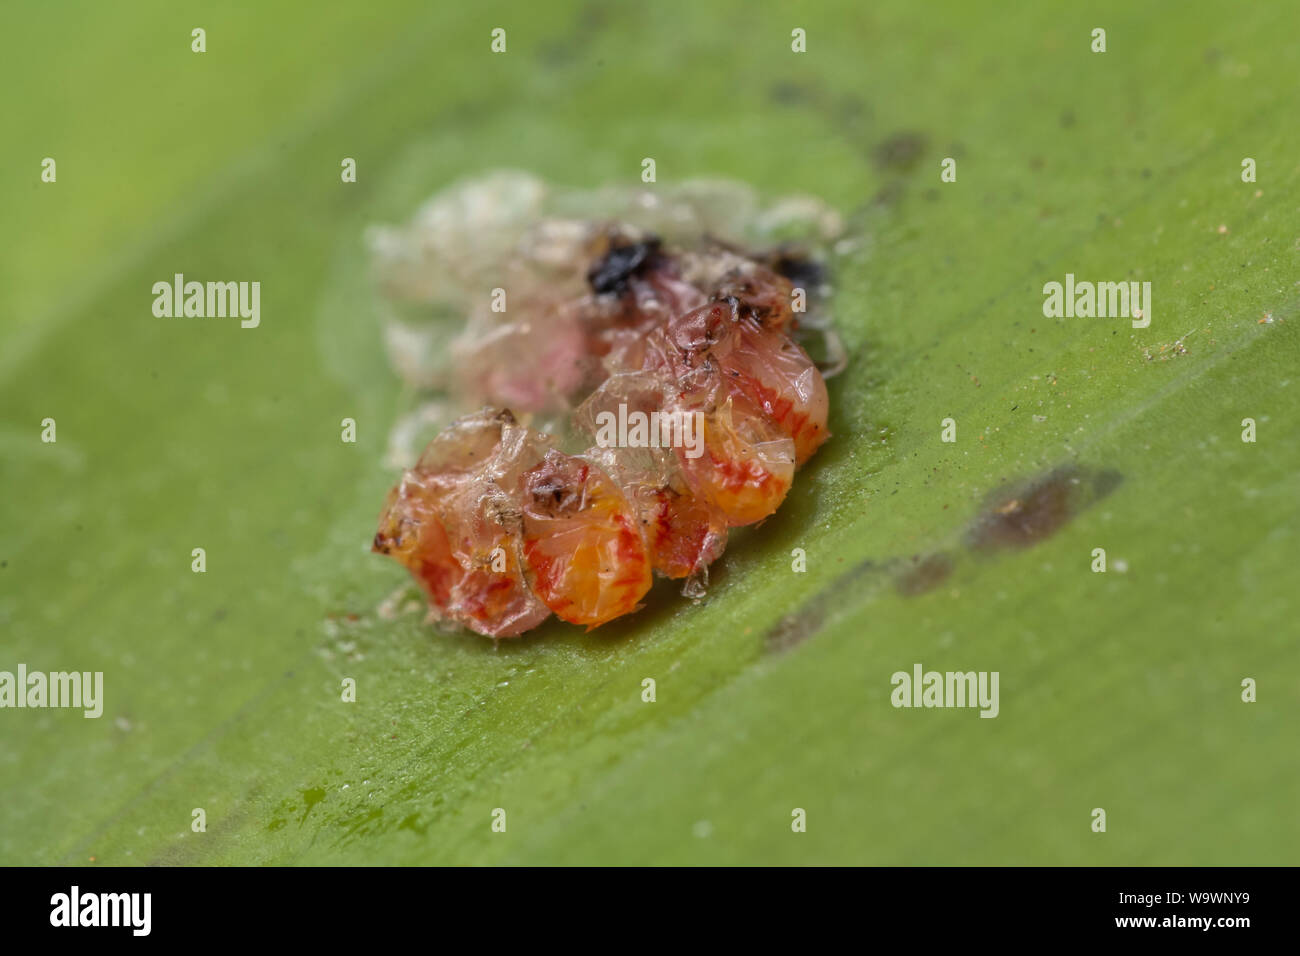 Hemiptera uova deposte in un giardino, close-up delle uova di insetto Foto Stock